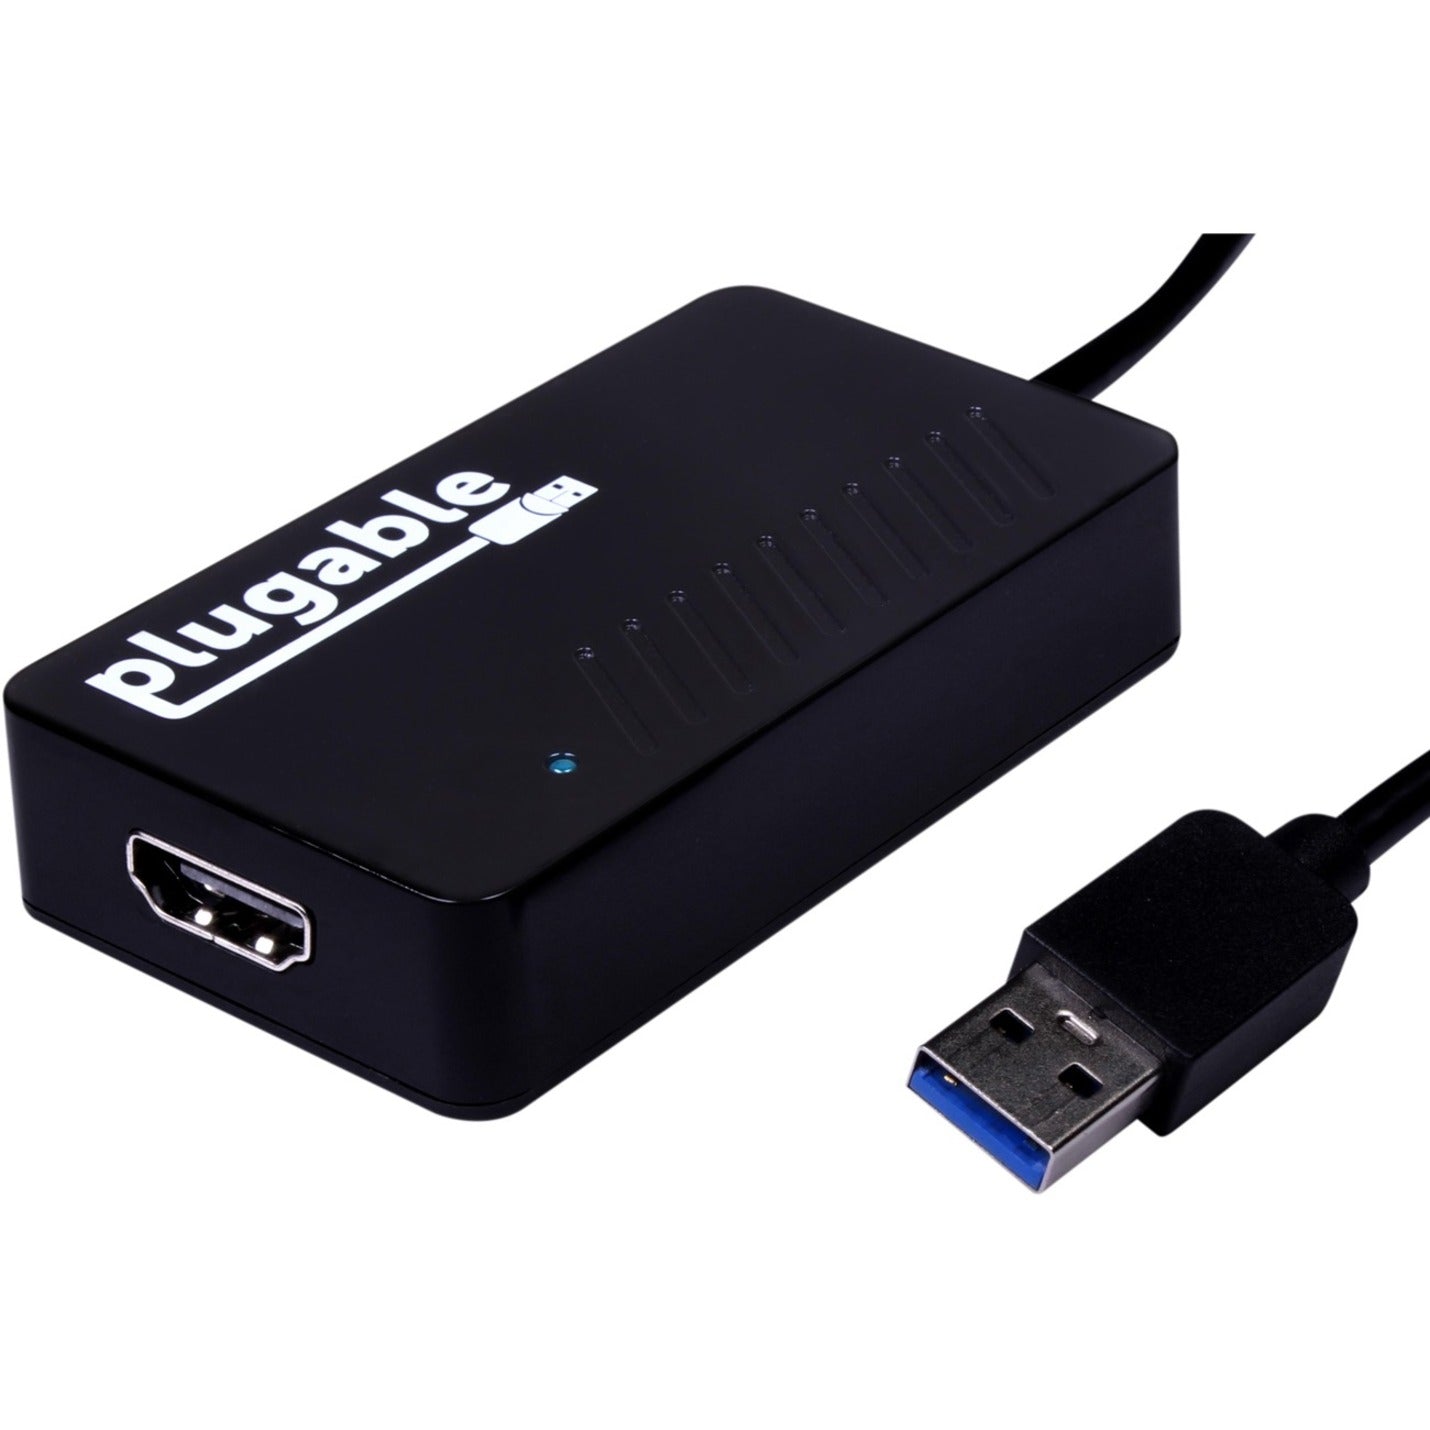 Plugable UGA-2KHDMI USB 3.0 a HDMI Video Graphics Adapter con Audio per Monitor Multipli Risoluzione 2560 x 1440